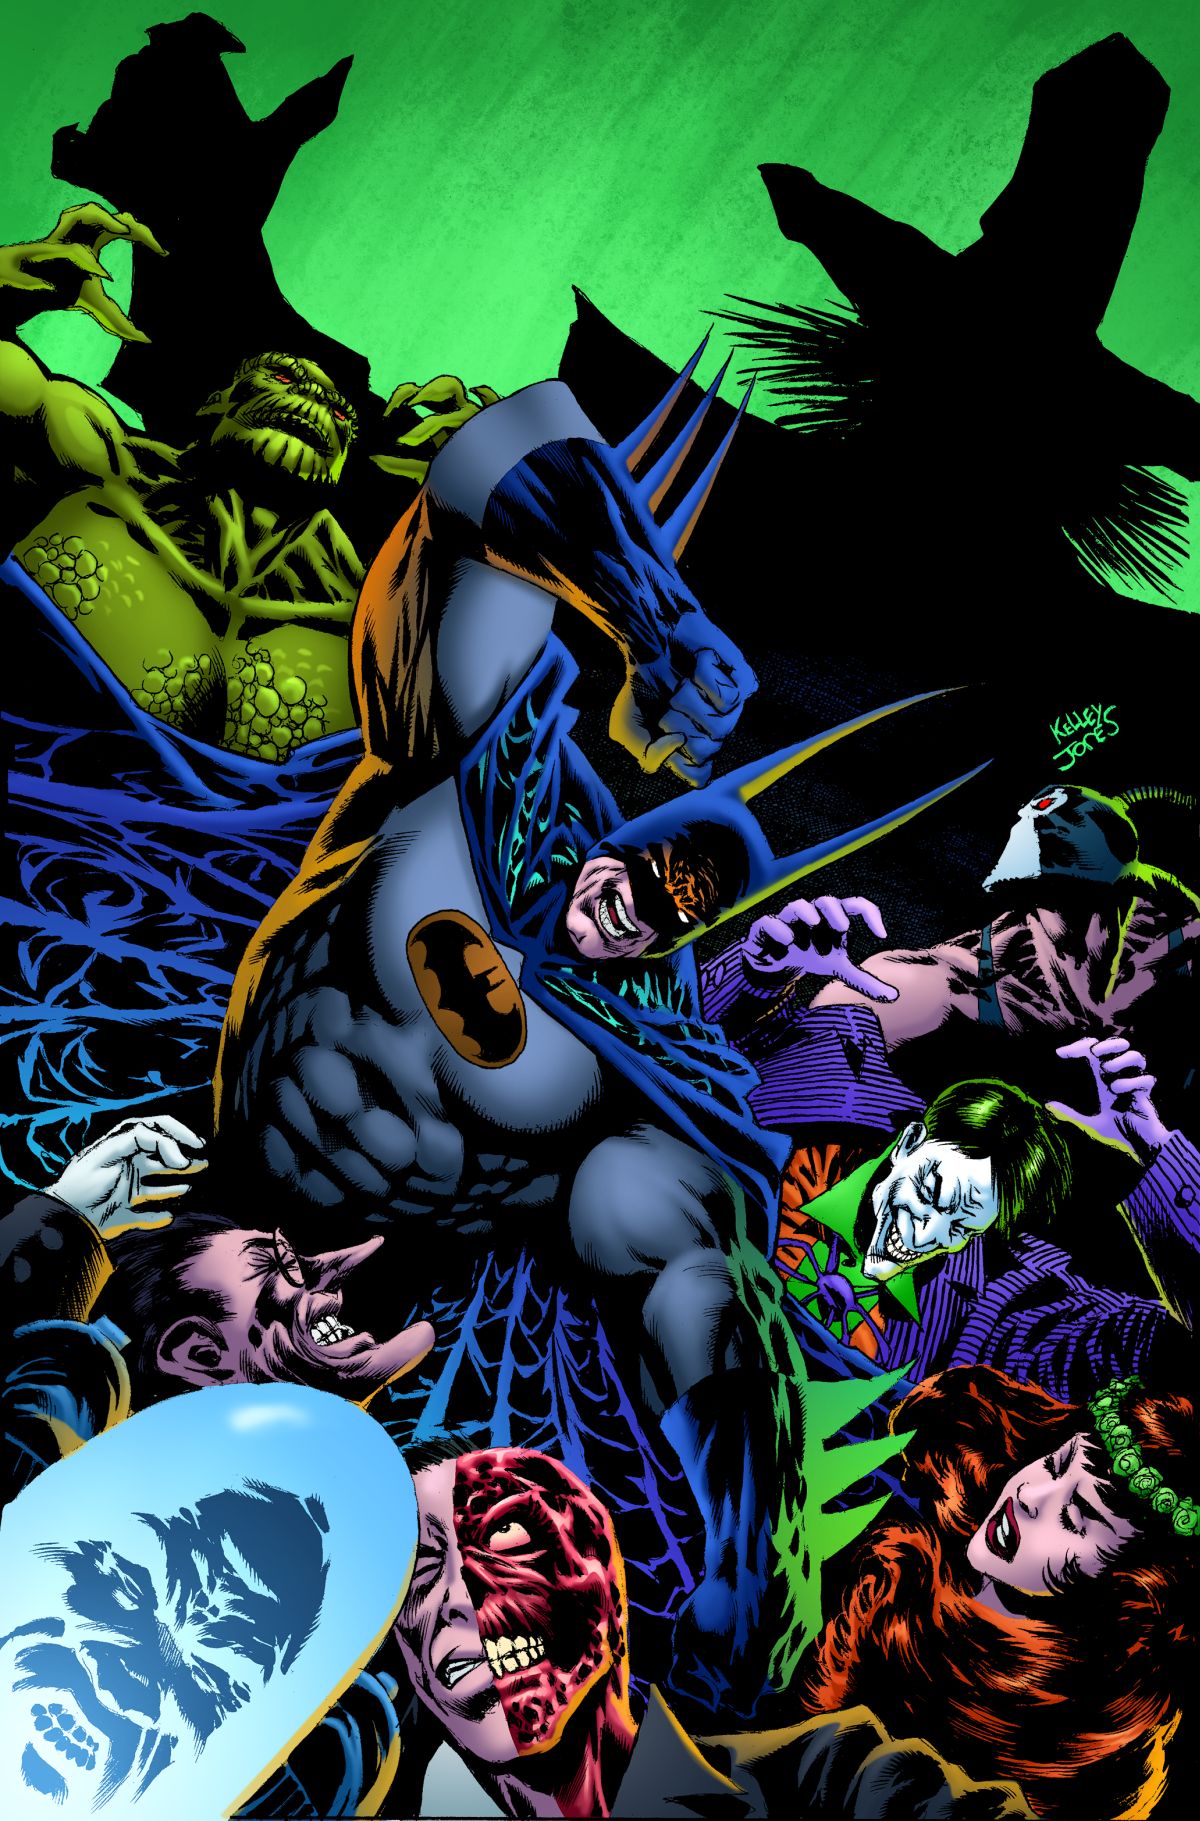 BATMAN: KINGS OF FEAR #1